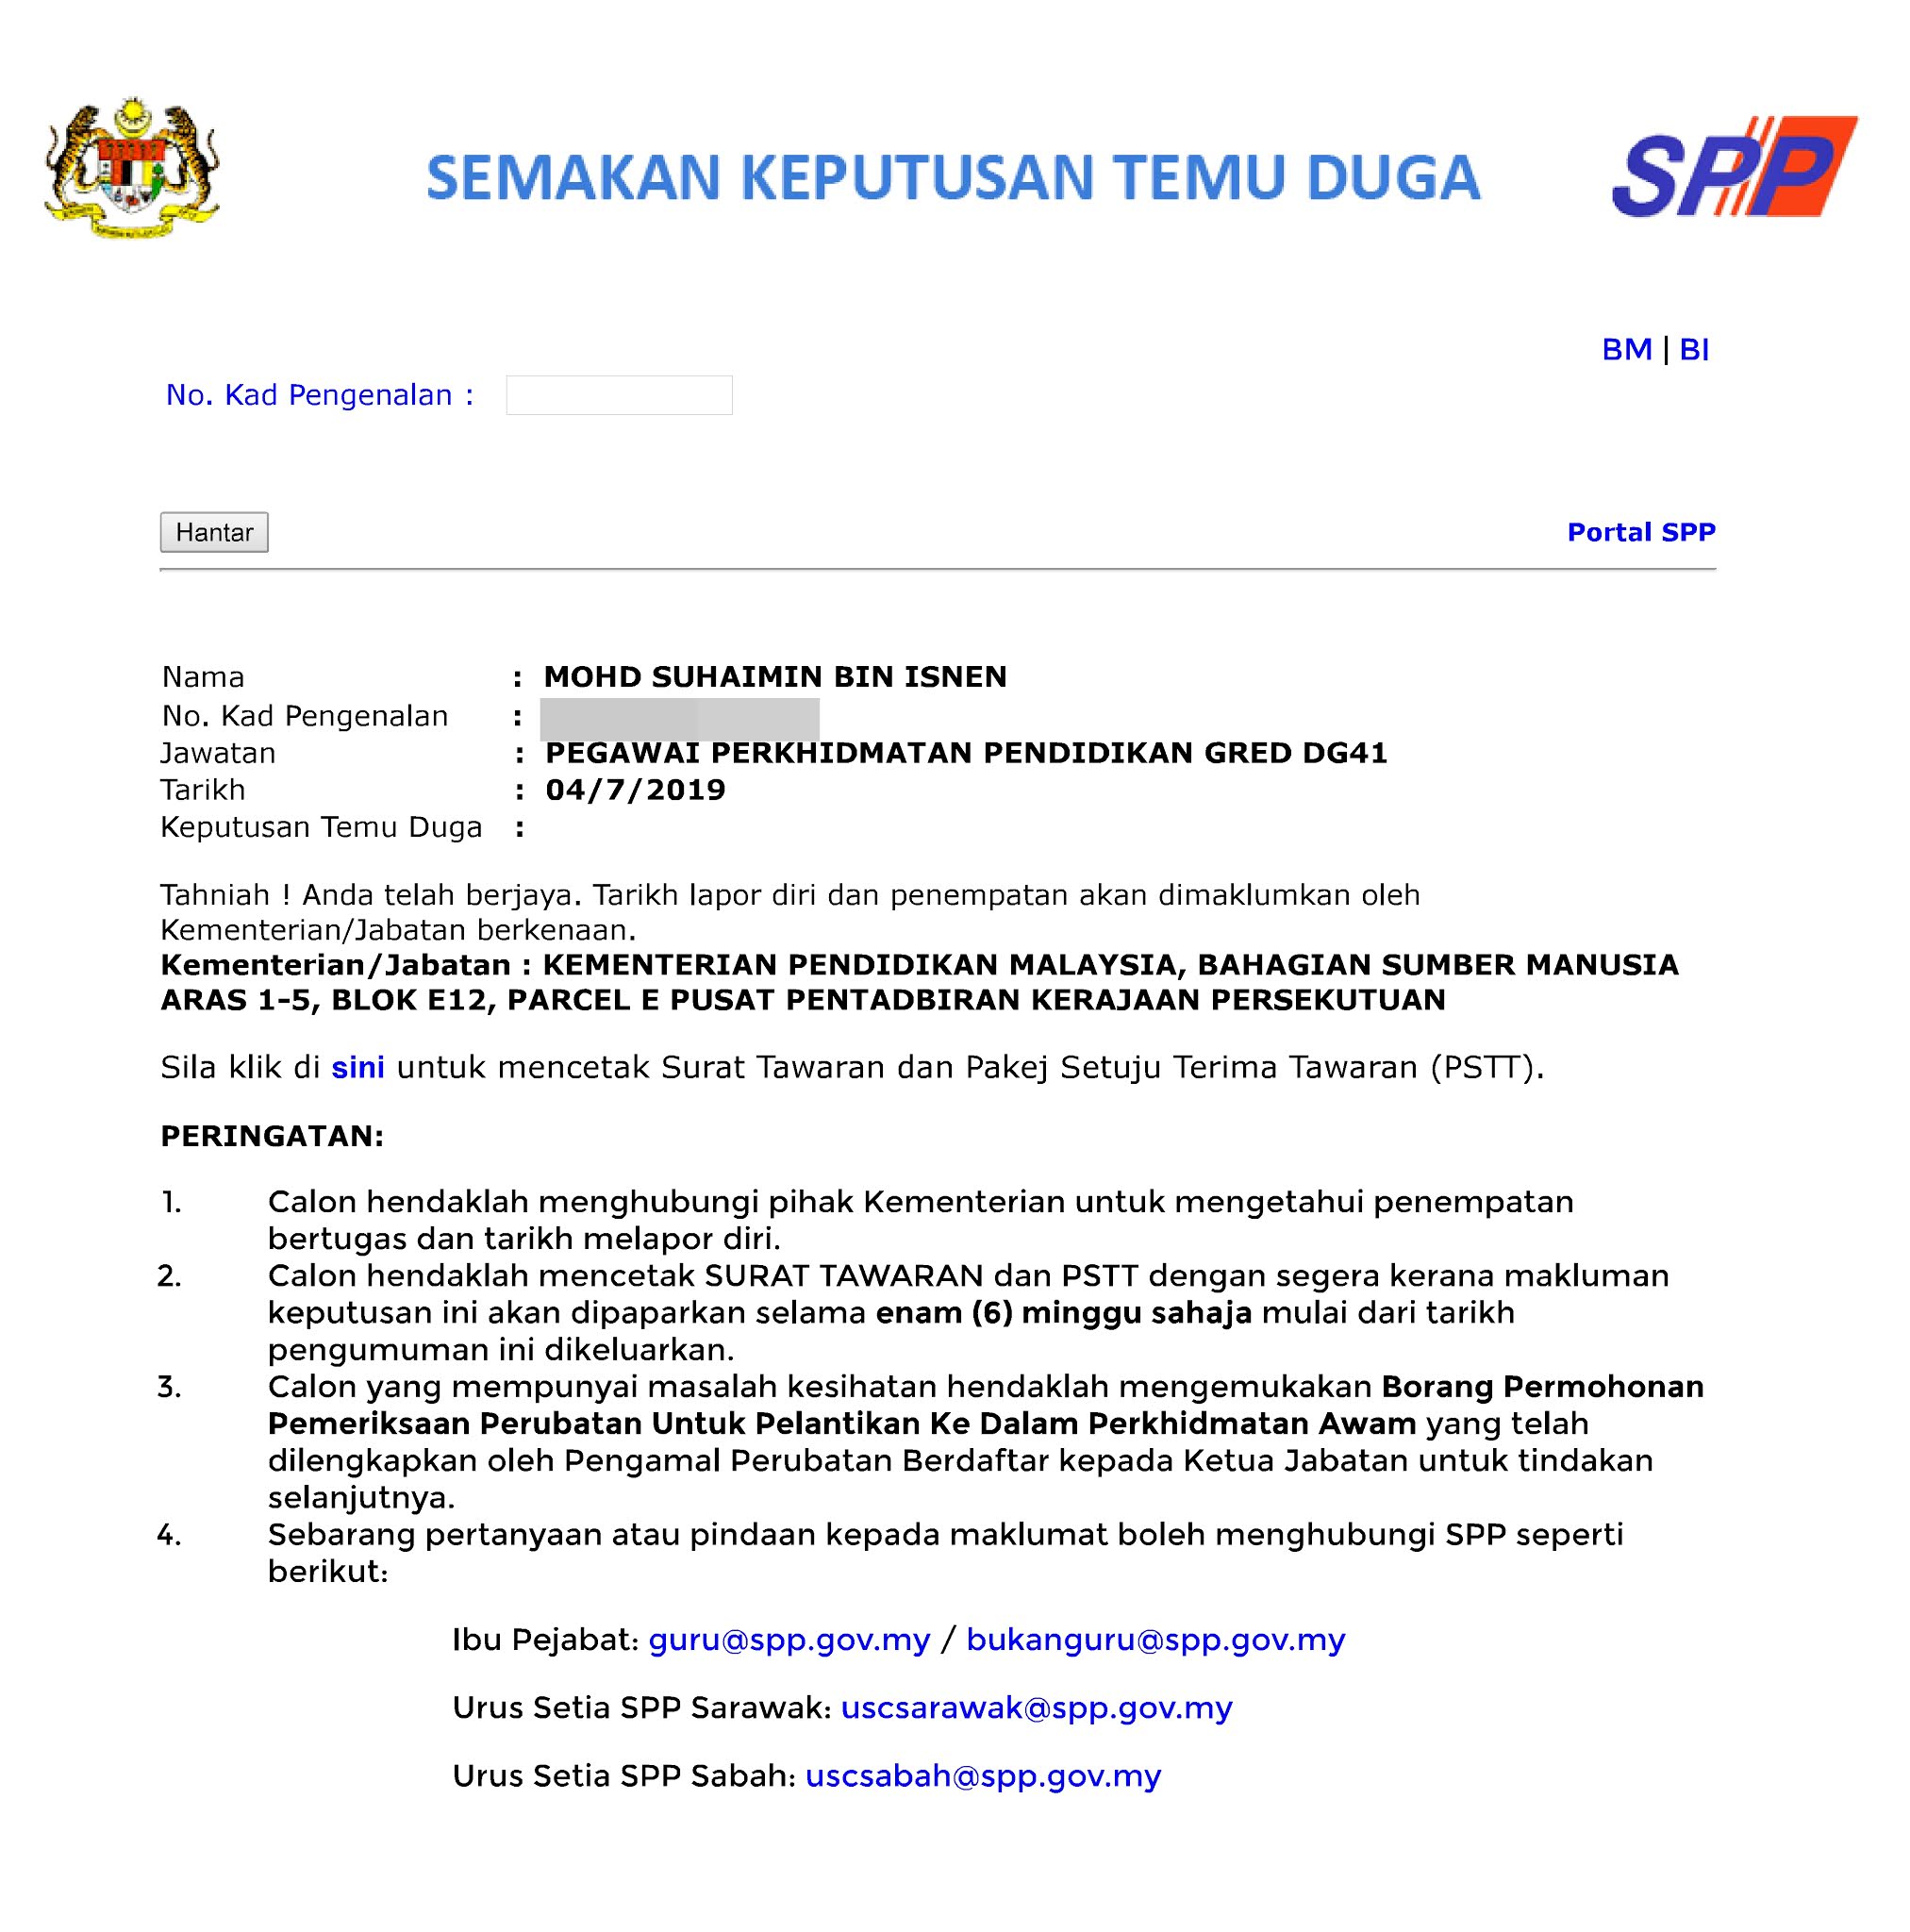 Kementerian Pendidikan Malaysia Surat Pengesahan